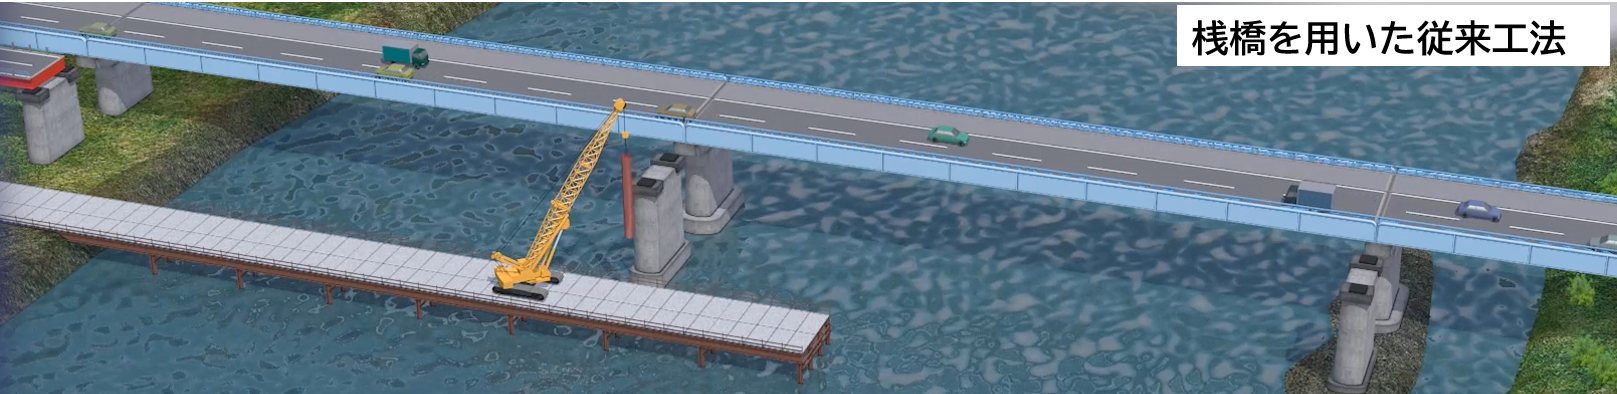 桟橋を用いた従来工法イメージ